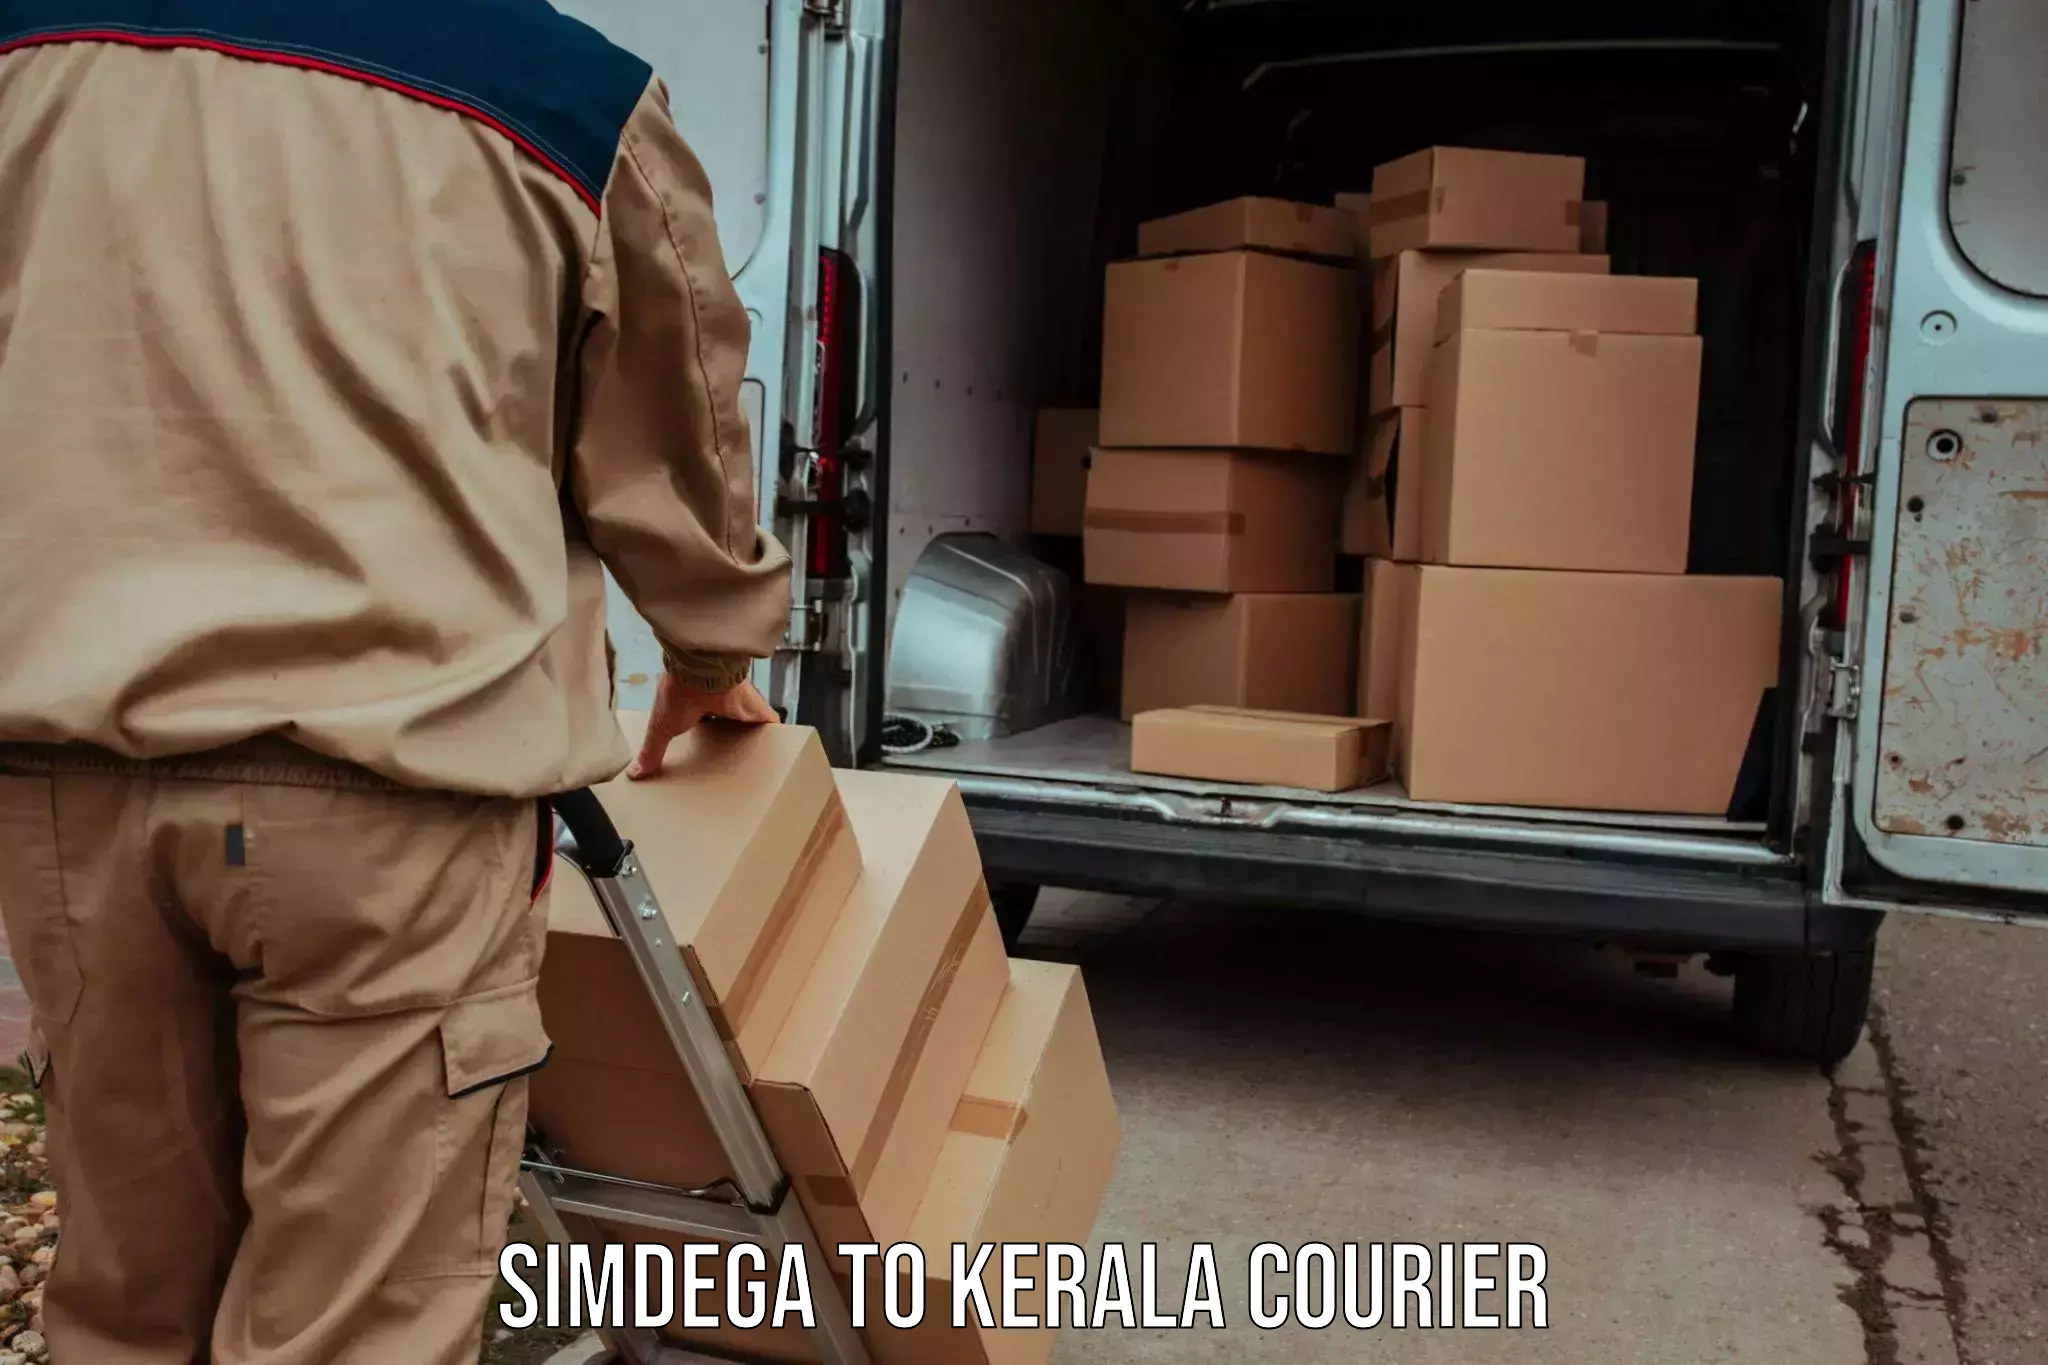 Next day courier Simdega to Kozhikode